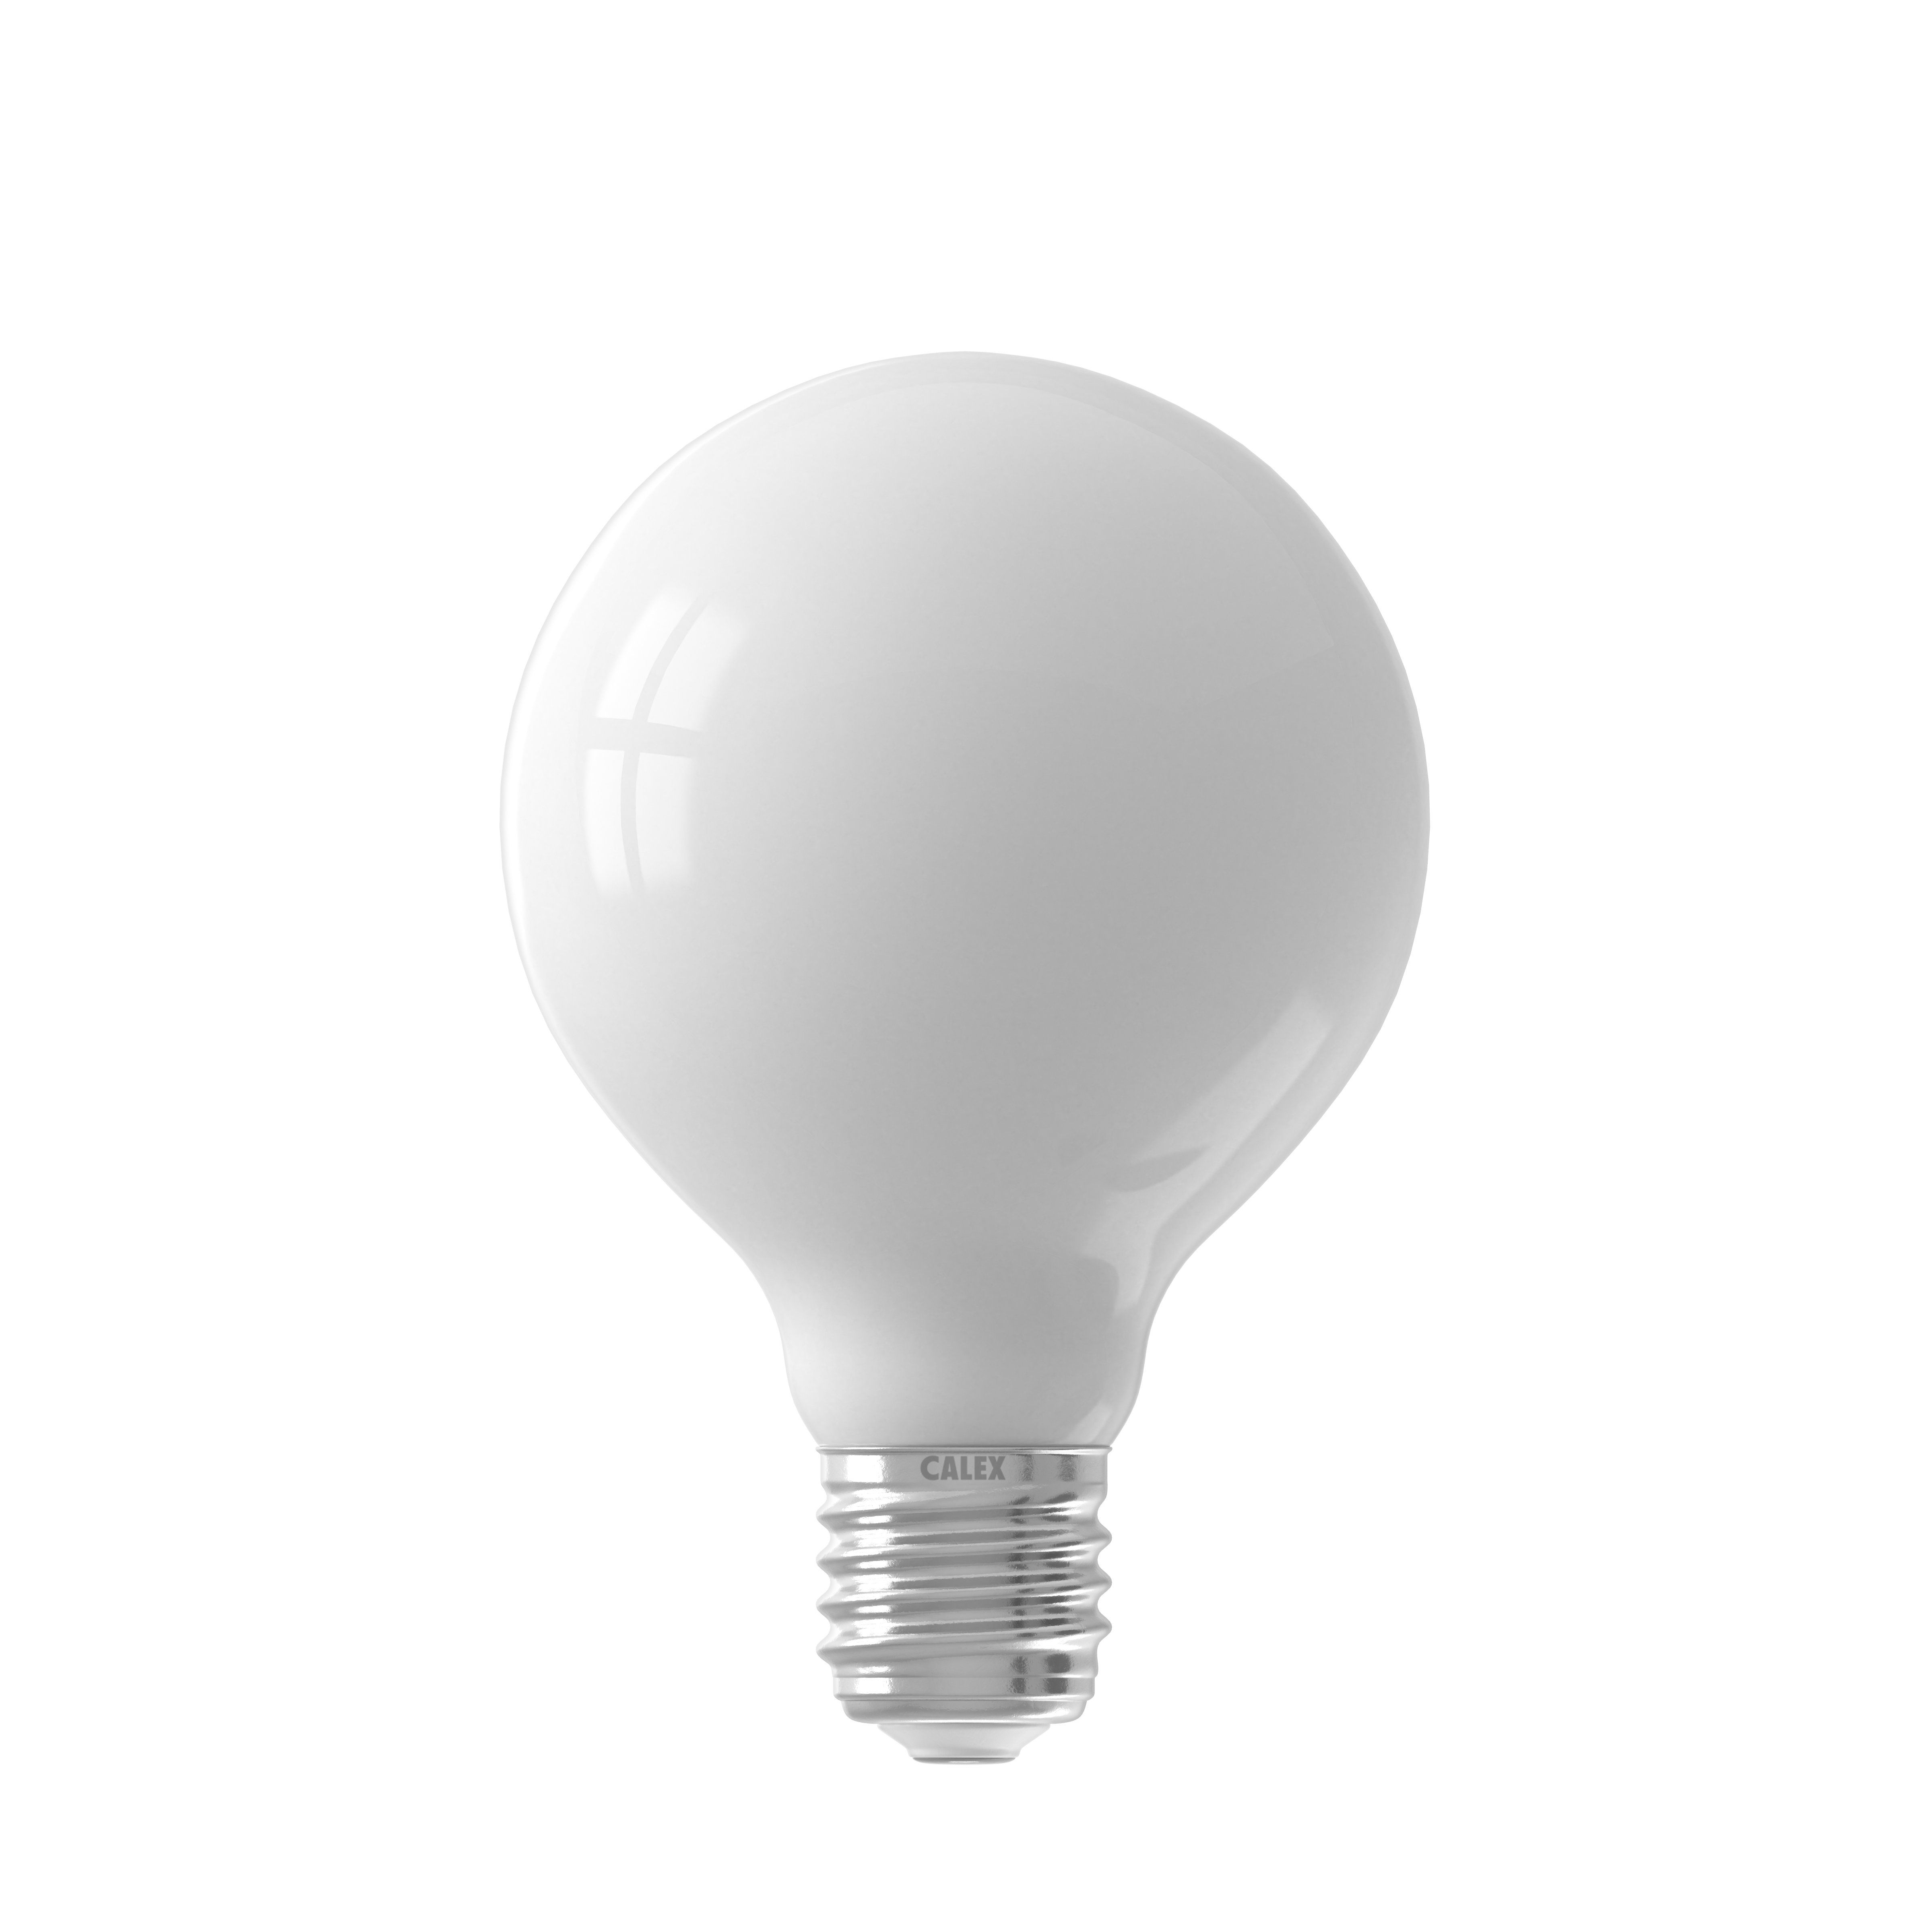 Ampoule LED E27 SOFTLINE éclairage blanc froid 7W 806 lumens Ø8cm - Keria  et Laurie Lumière